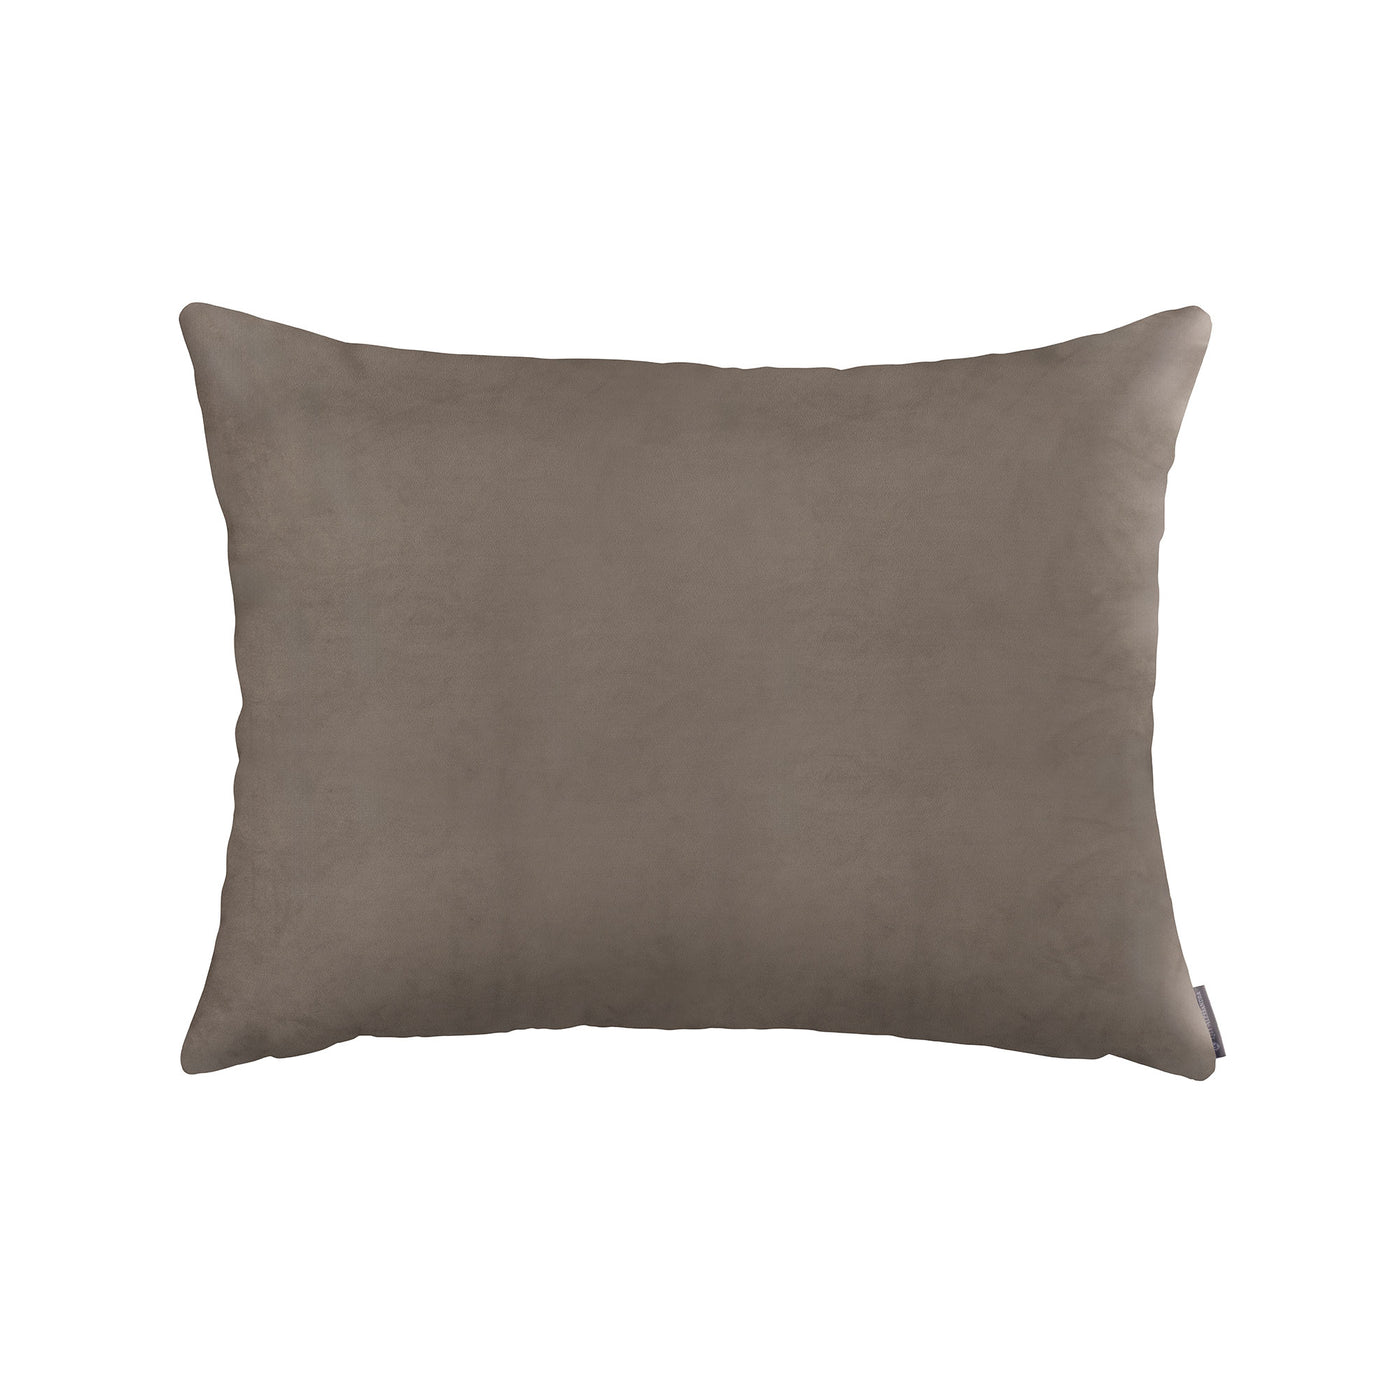 Vivid Ecru Luxe Euro Pillow (27x36)